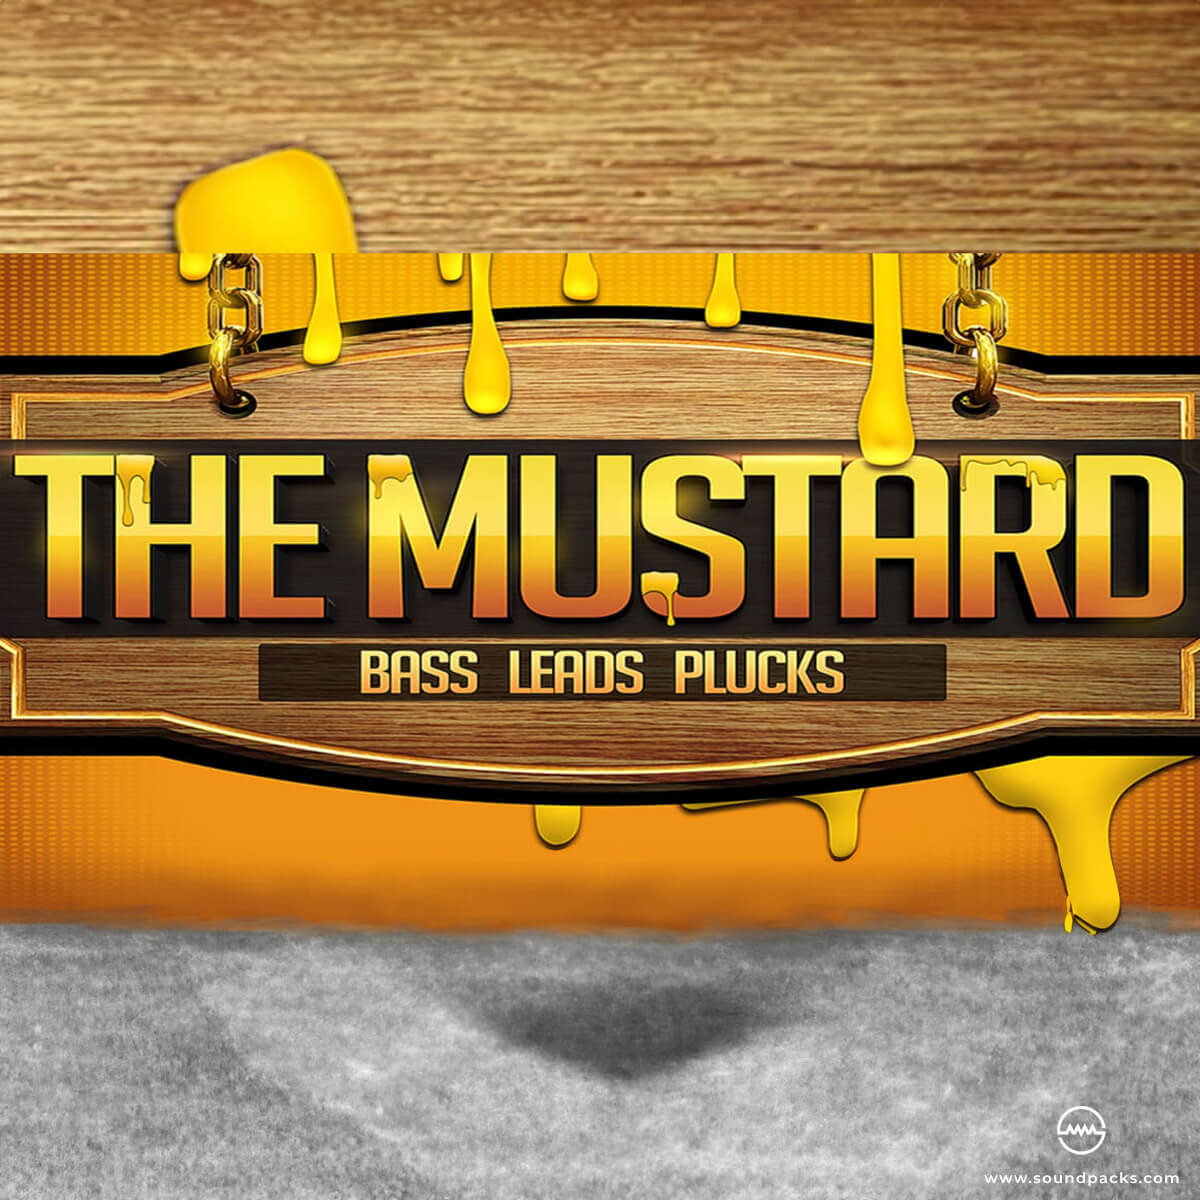 The Mustard Massive Presets